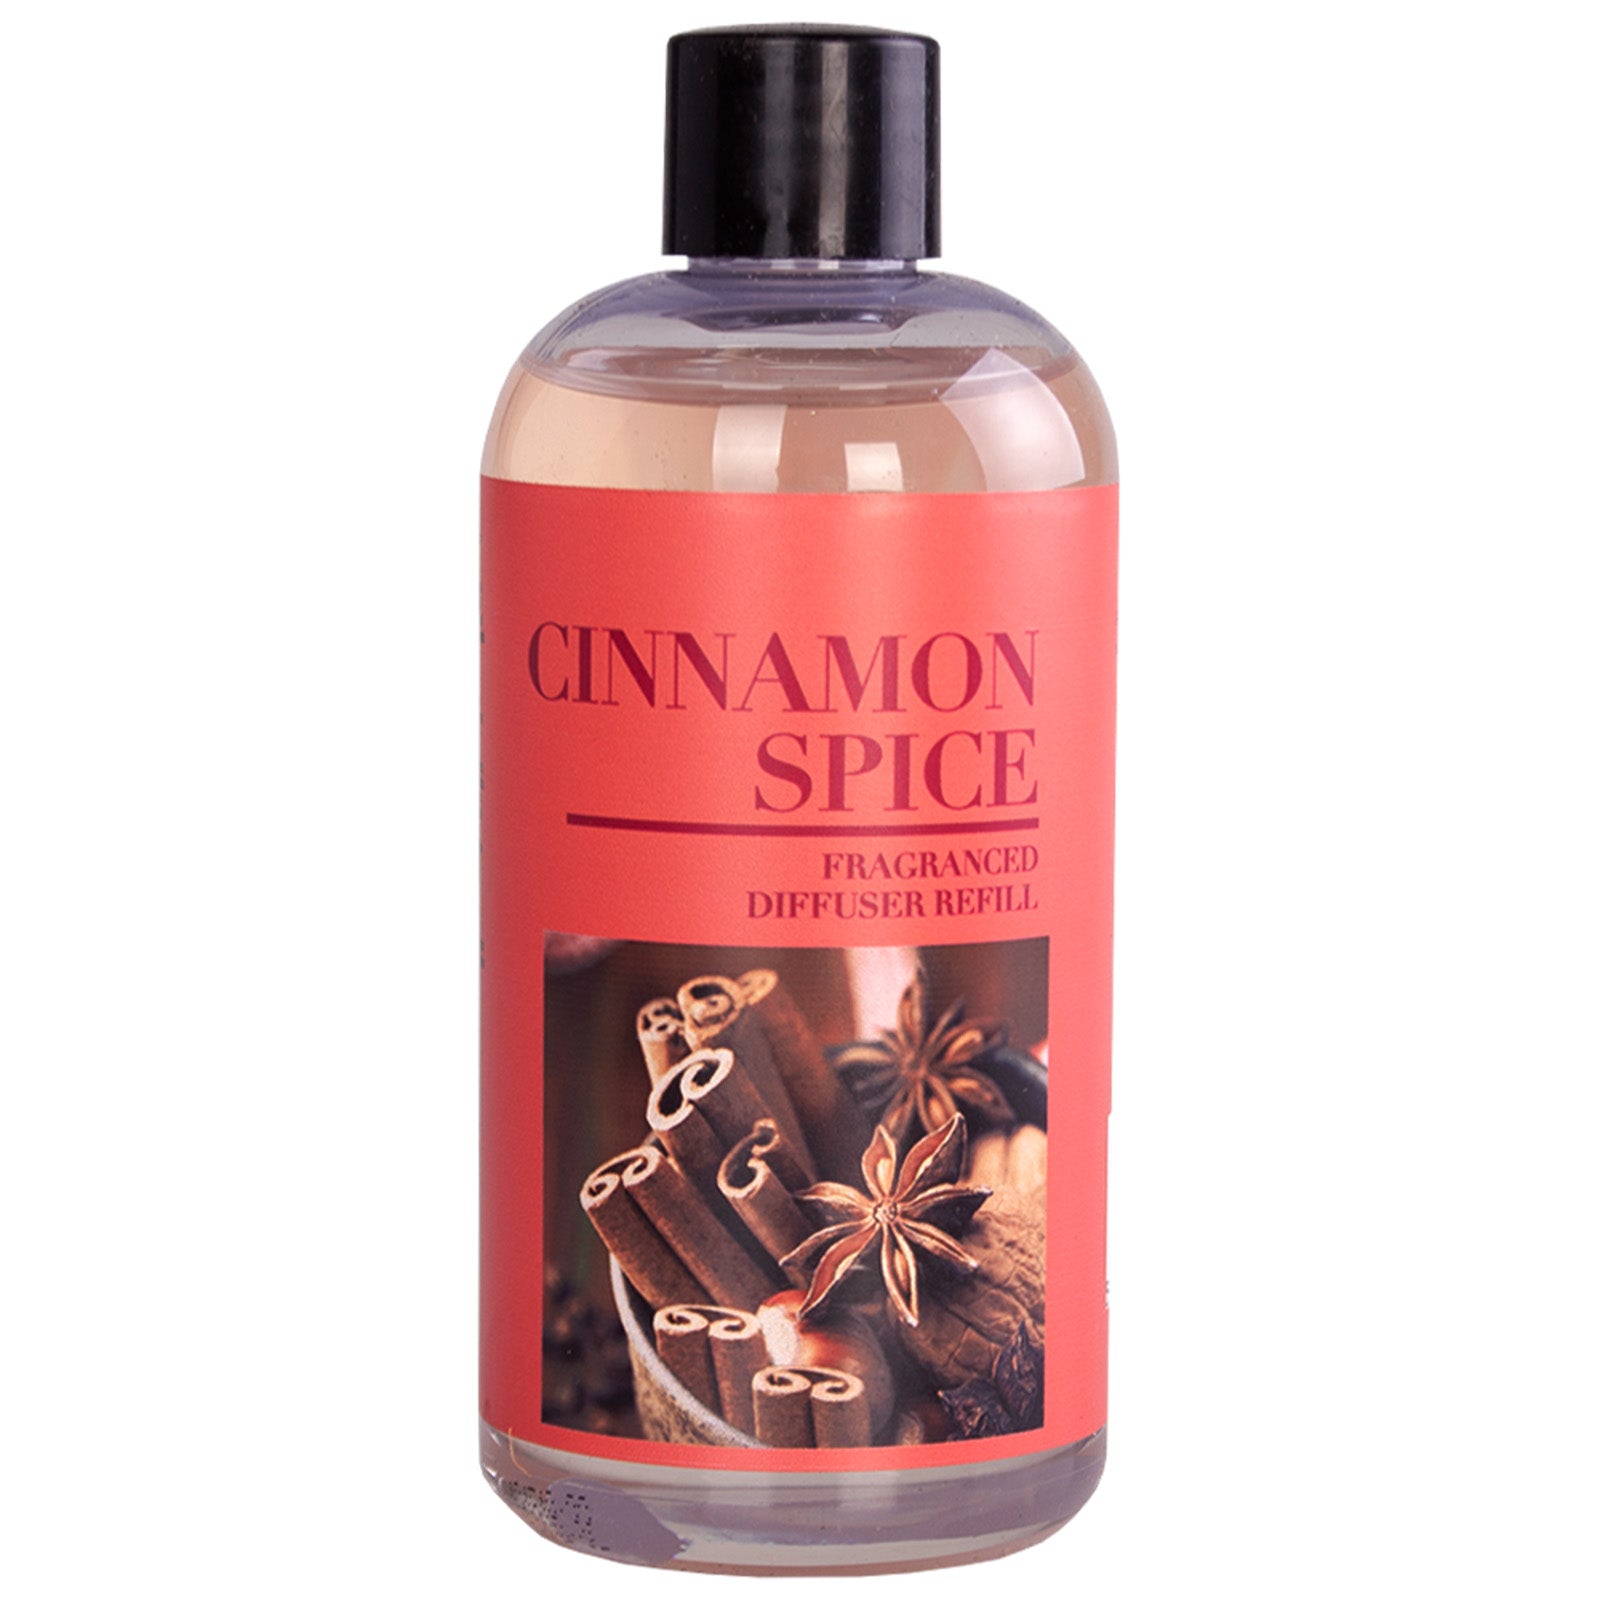 Cinnamon & Spice Reed Diffuser Oil Refill 6.8 FL OZ (200ml)